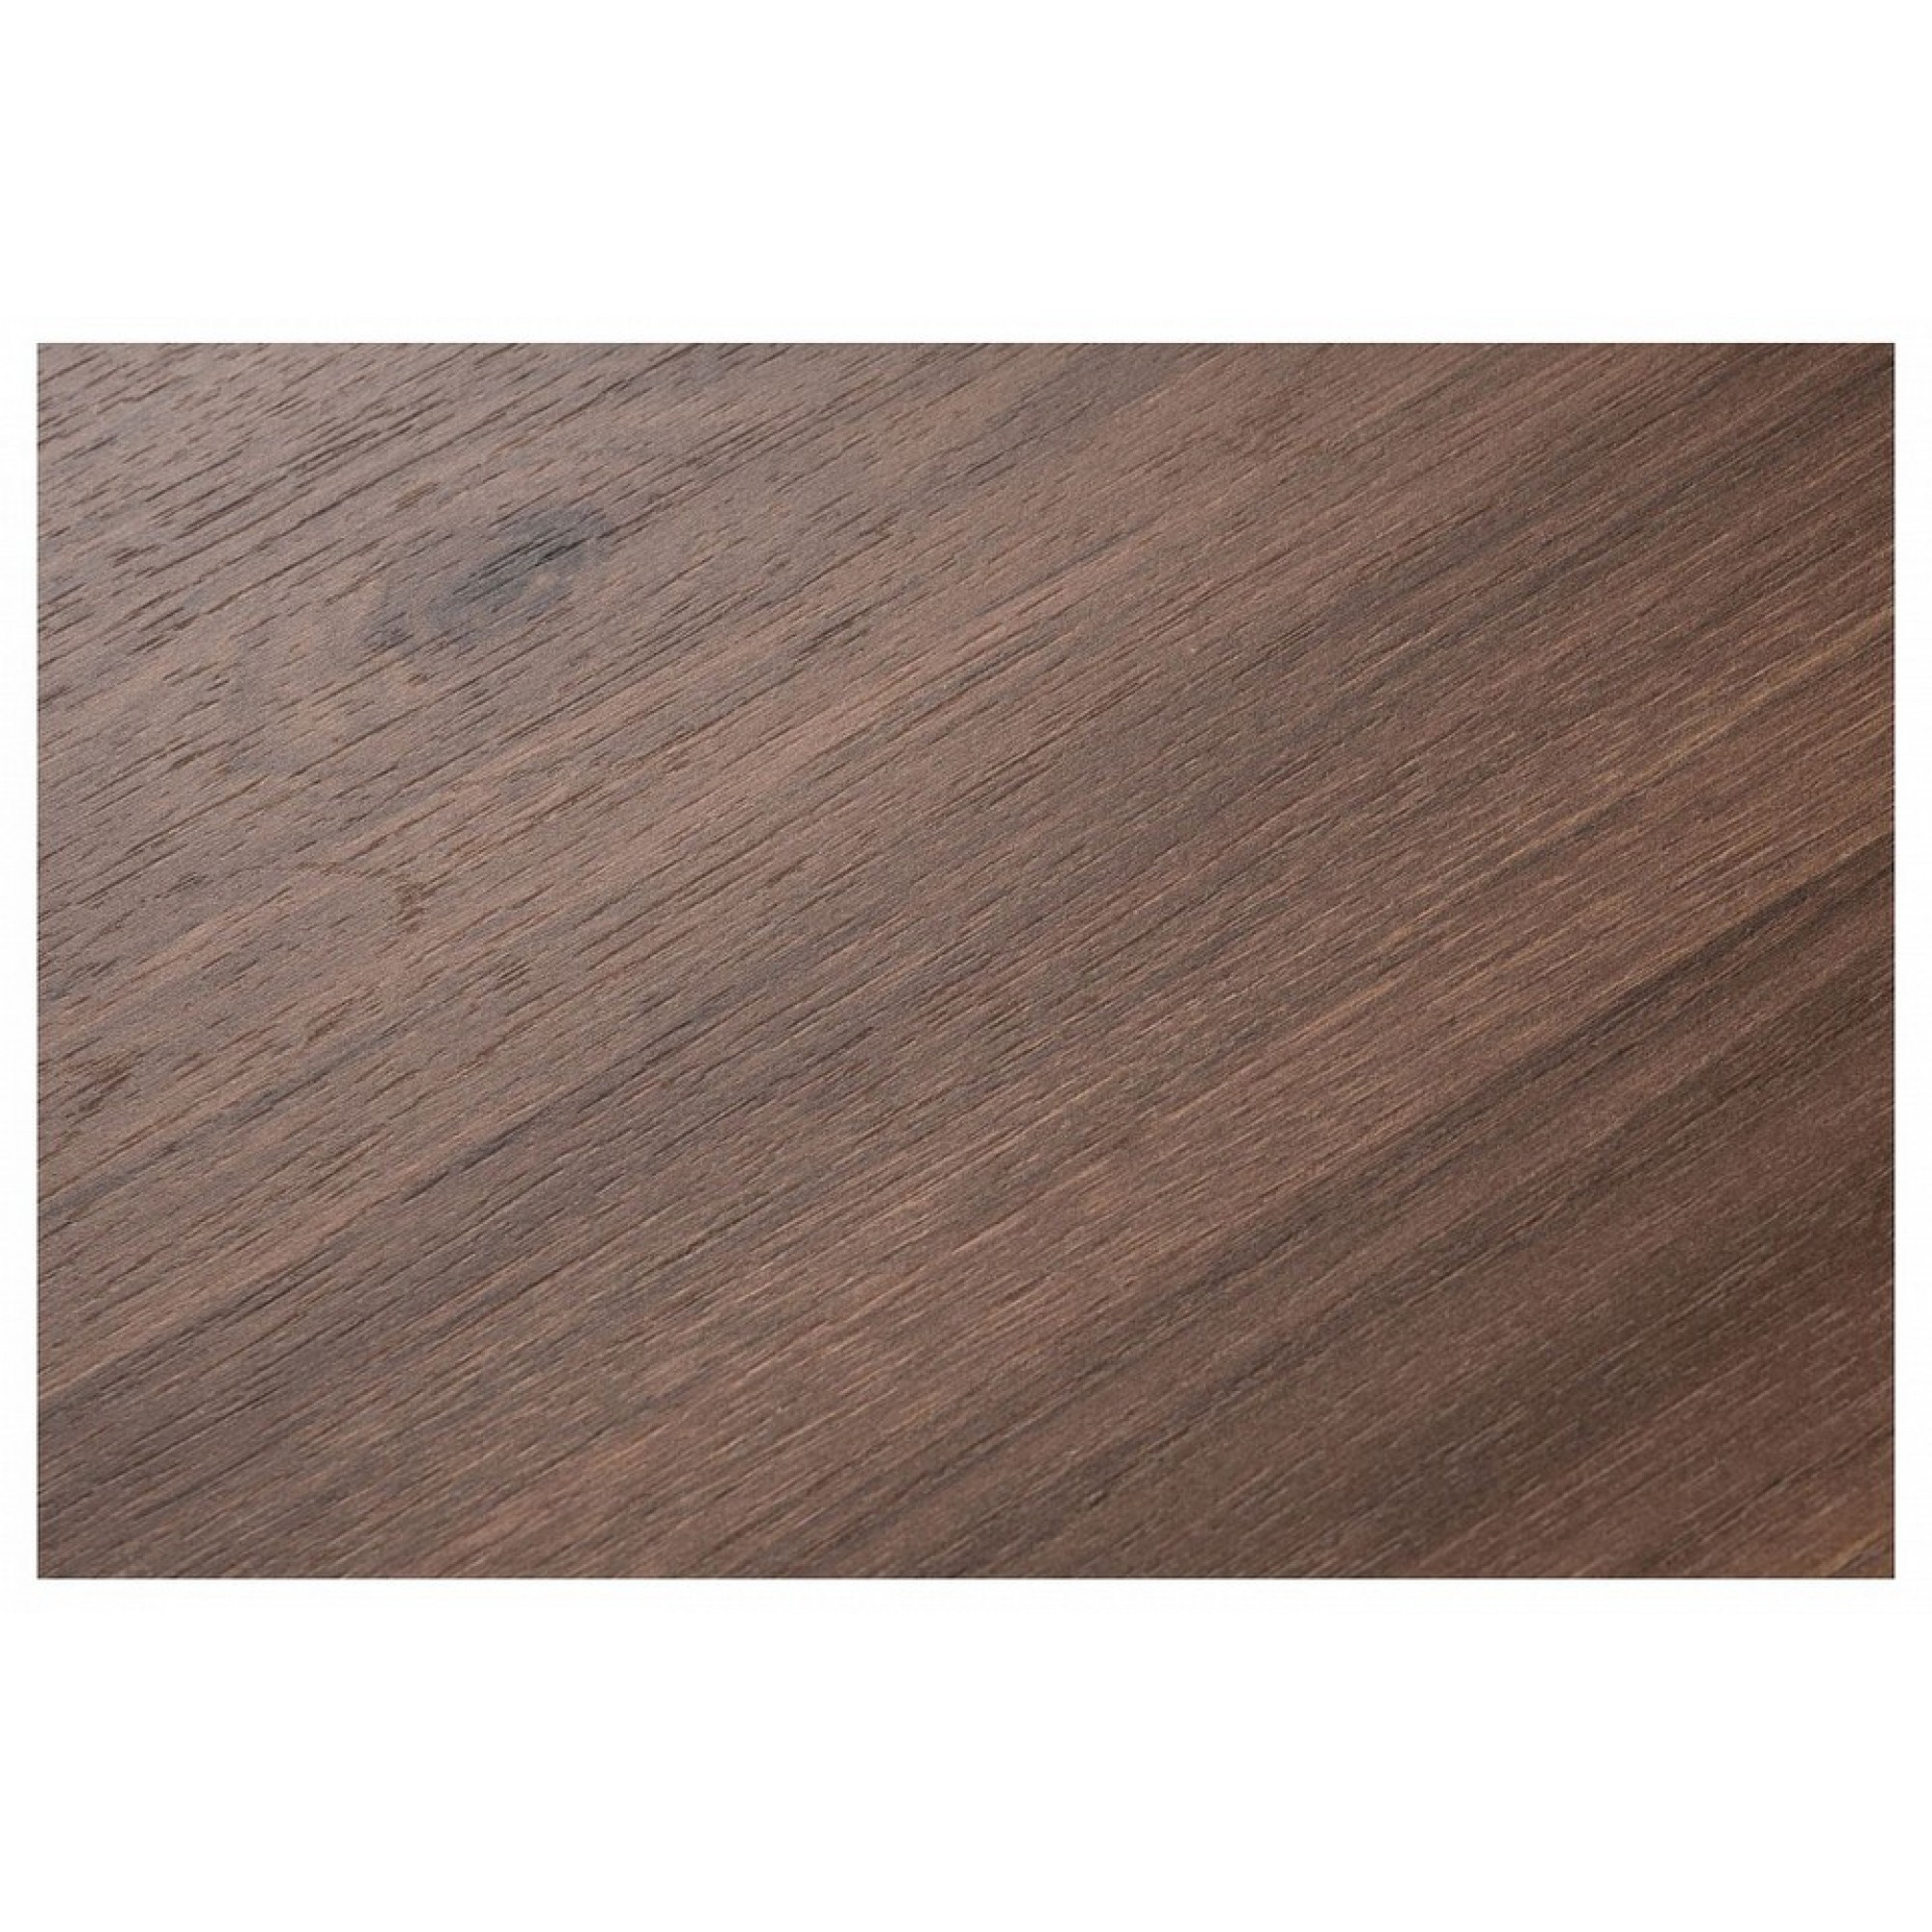 Стол обеденный Лота Лофт древесина коричневая нейтральная гикори WO_489737